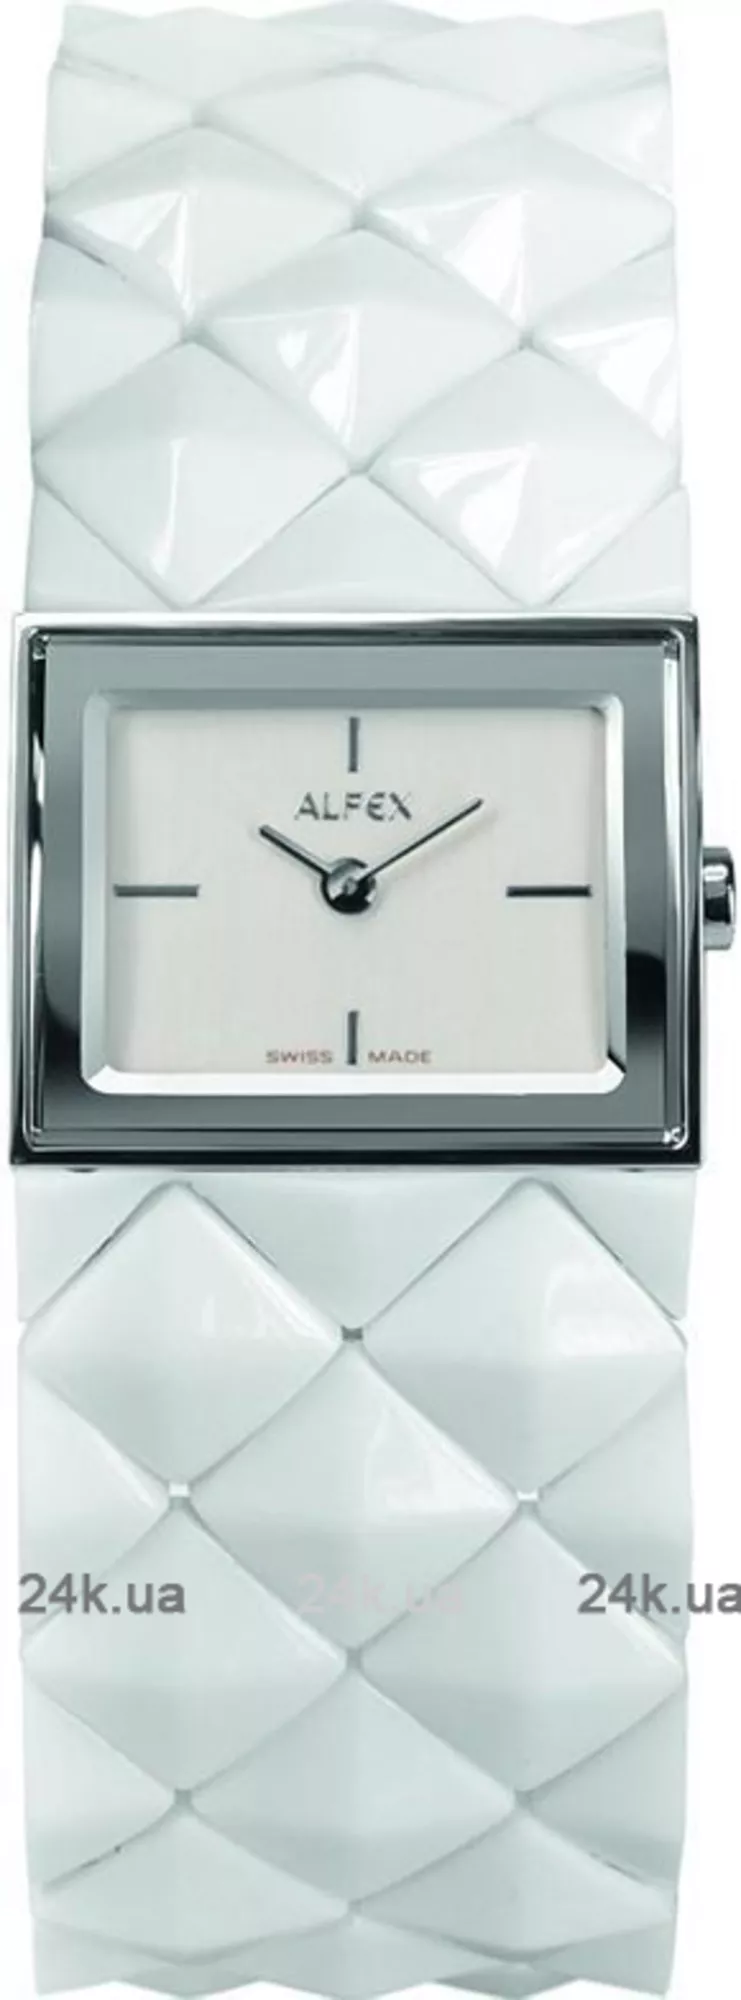 Часы Alfex 5676/770